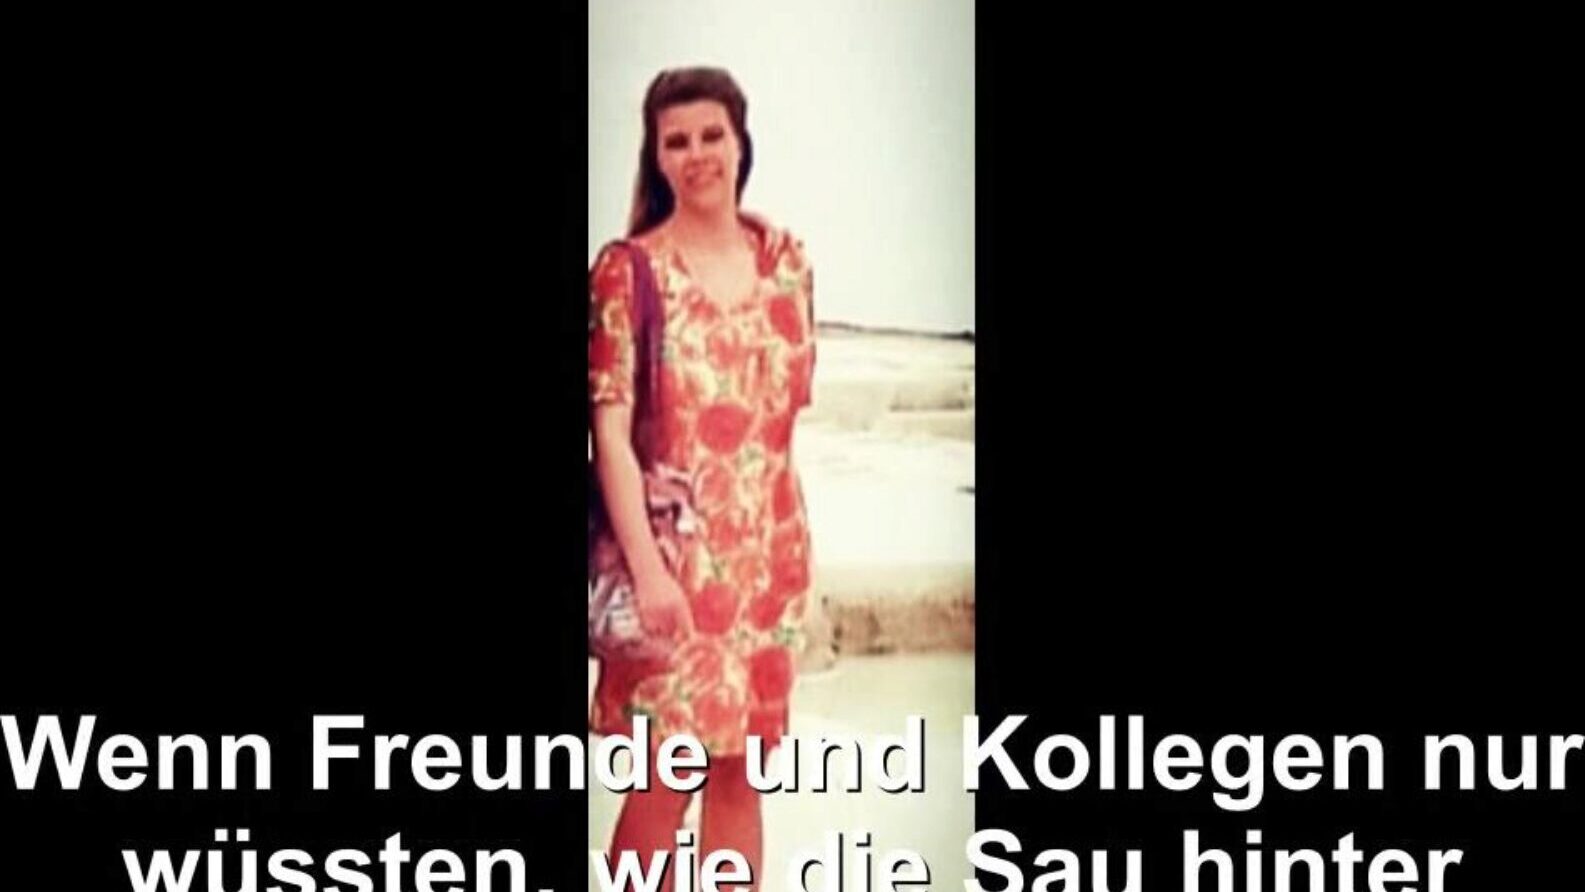 德国家庭主妇裸露，免费管德国高清色情BD观看德国家庭主妇裸露的电影现场在xhamster，最大的高清做爱管网站上有成千上万的免费管德国德国妻子和自制的色情电影场景